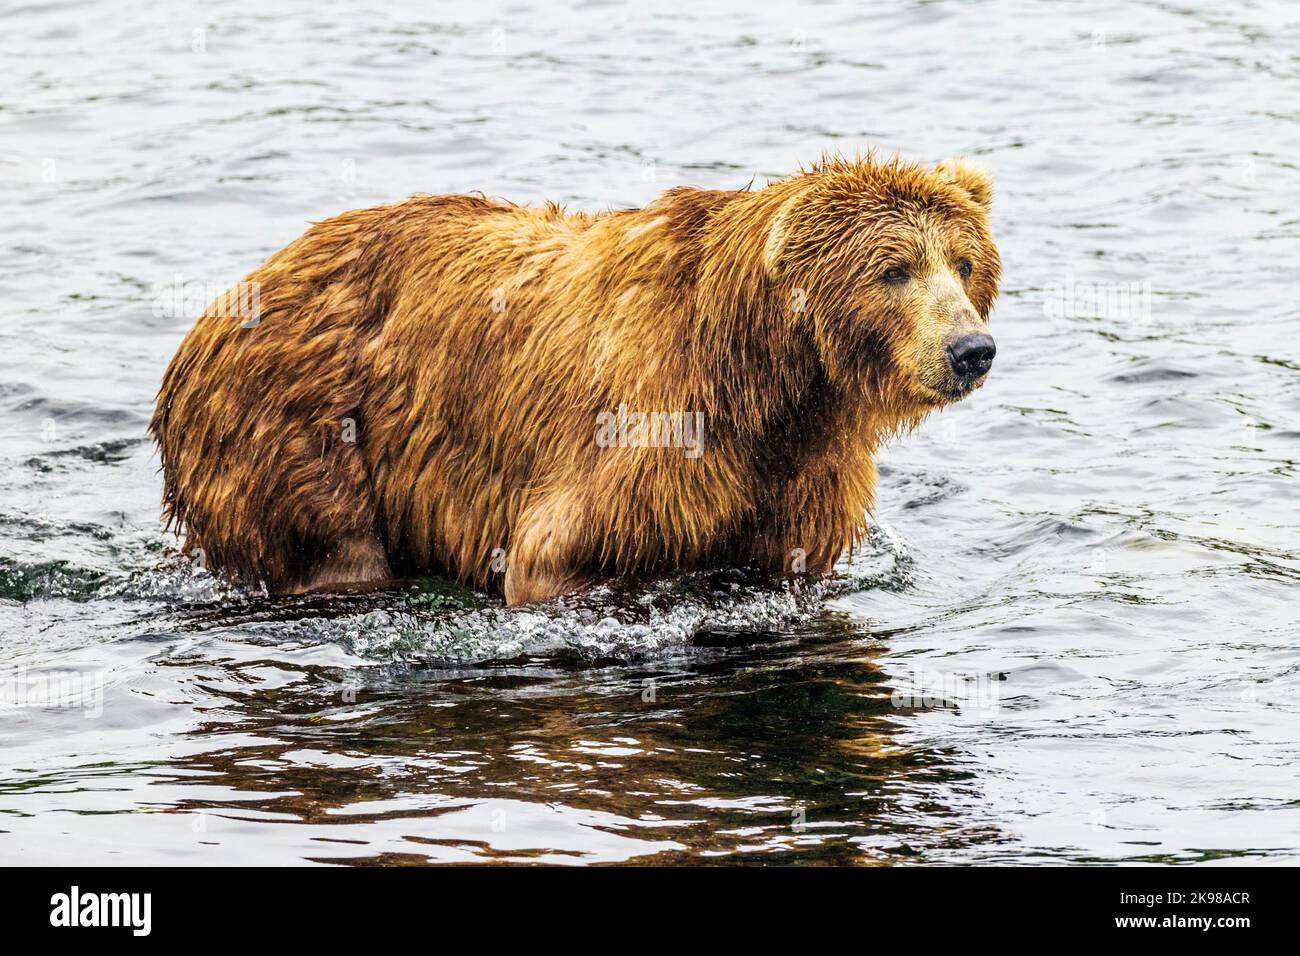 Ours brun adulte; Ursus arctos midendorffi; pêche au saumon sockeye; ours grizzly; refuge national de la faune de l'île Kodiak; Alaska; États-Unis Banque D'Images